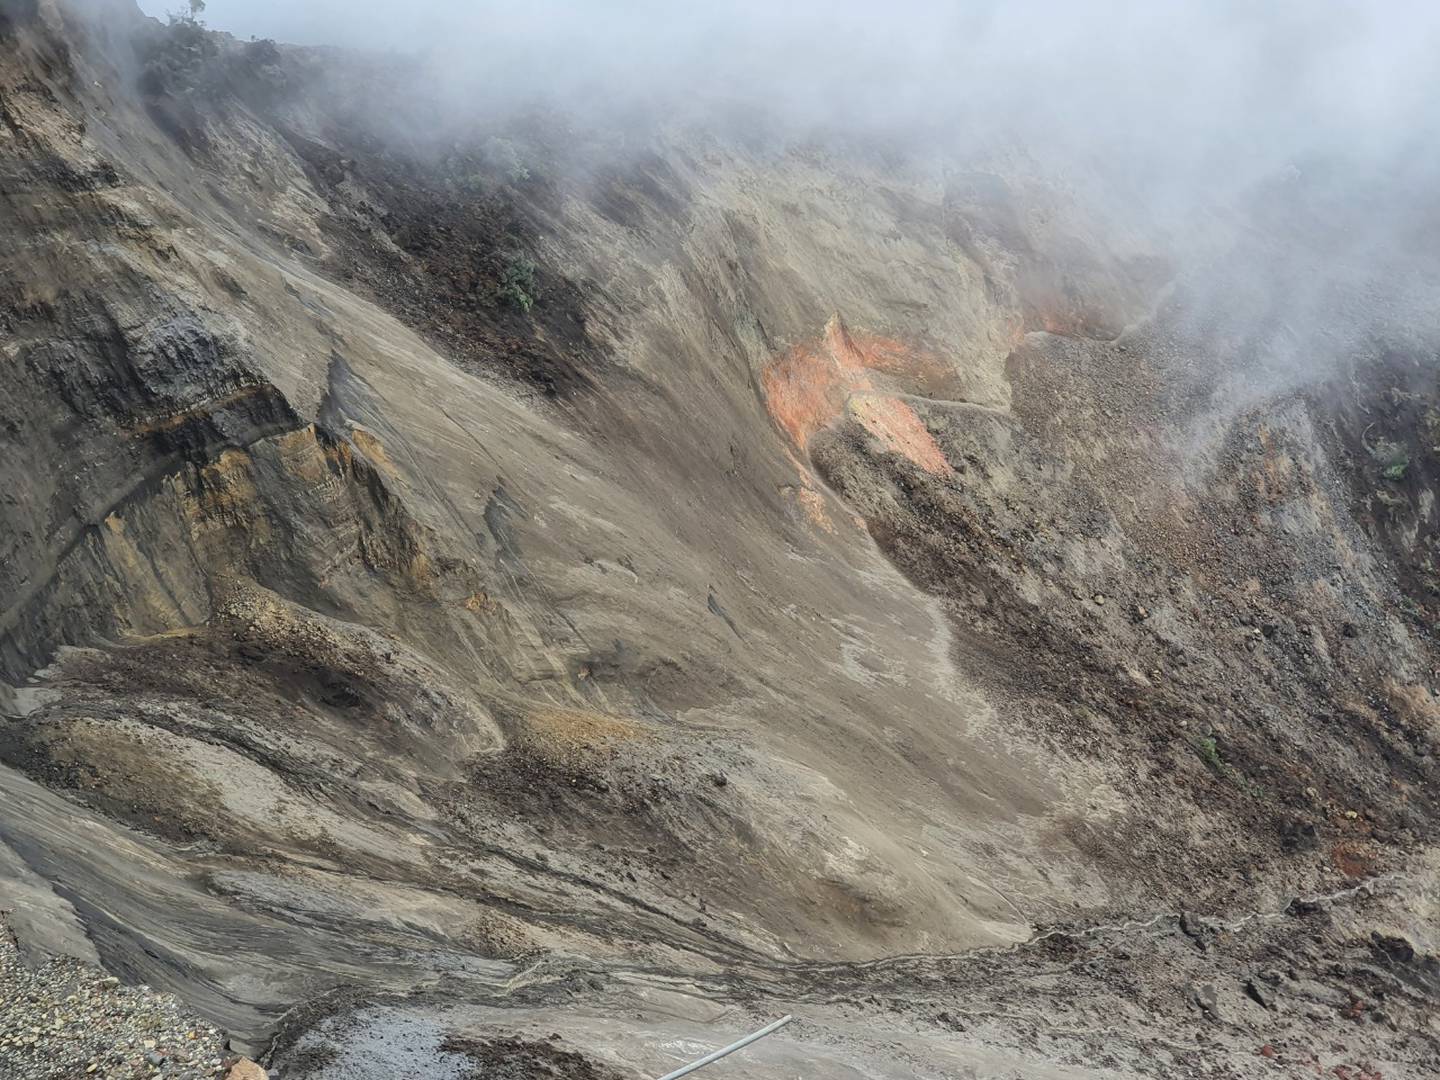 Los millones de metros cúbicos de rocas volcánicas, arena, arbustos y lodo quedaron a merced de las lluvias en una zona deshabitada. Foto: CNE.